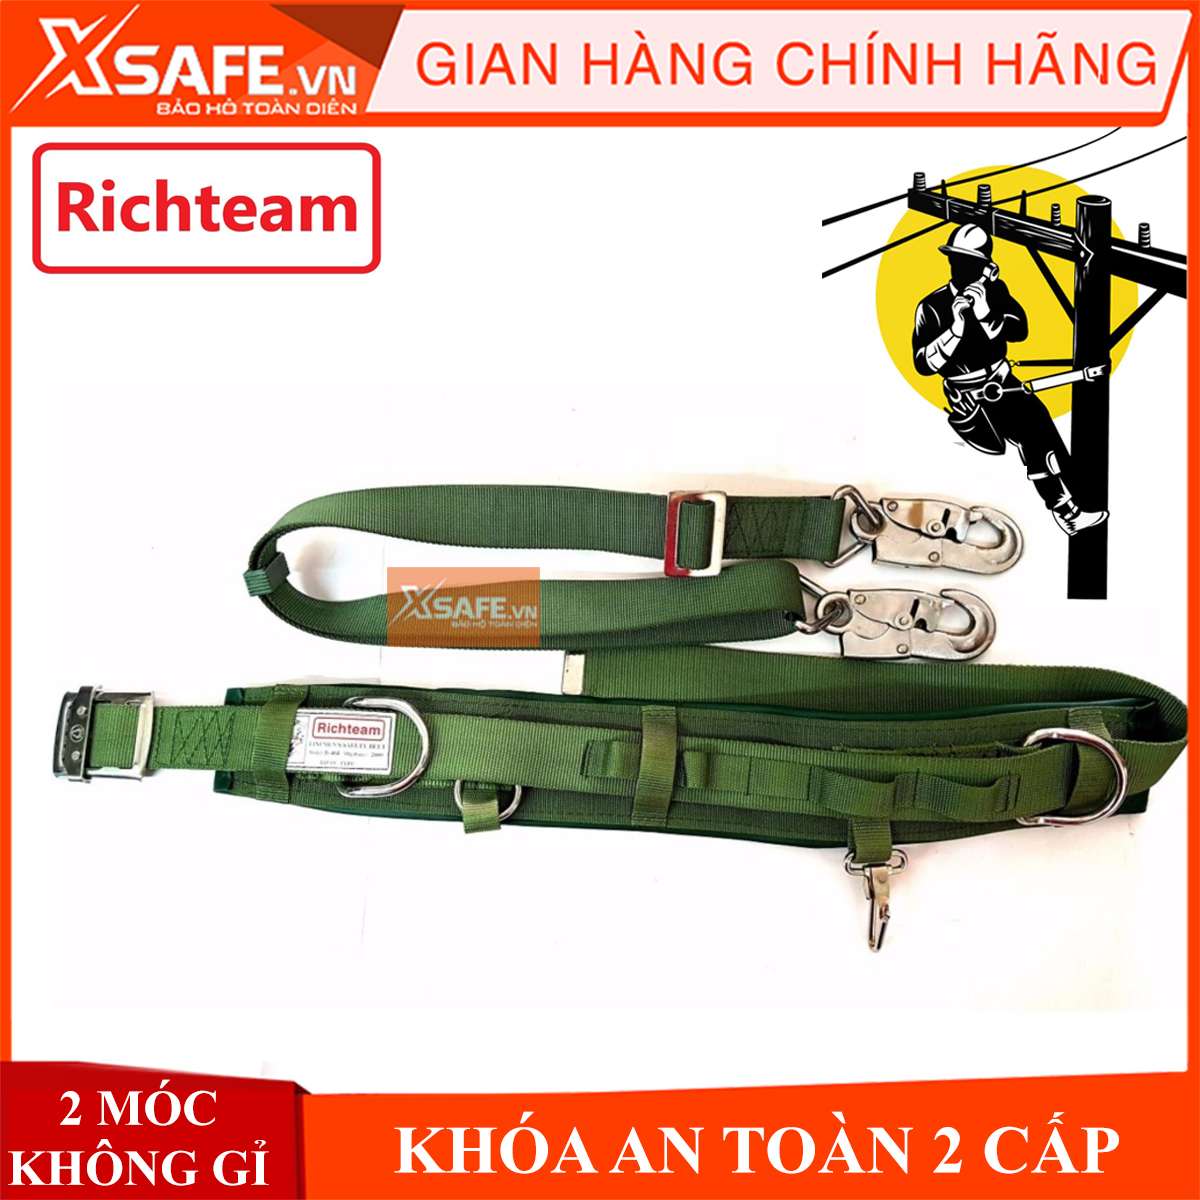 [CHÍNH HÃNG] Dây đai an toàn điện lực Richteam - 2 móc thép dây đai bảo hộ dụng cụ bảo hộ lao động an toàn chất lượng